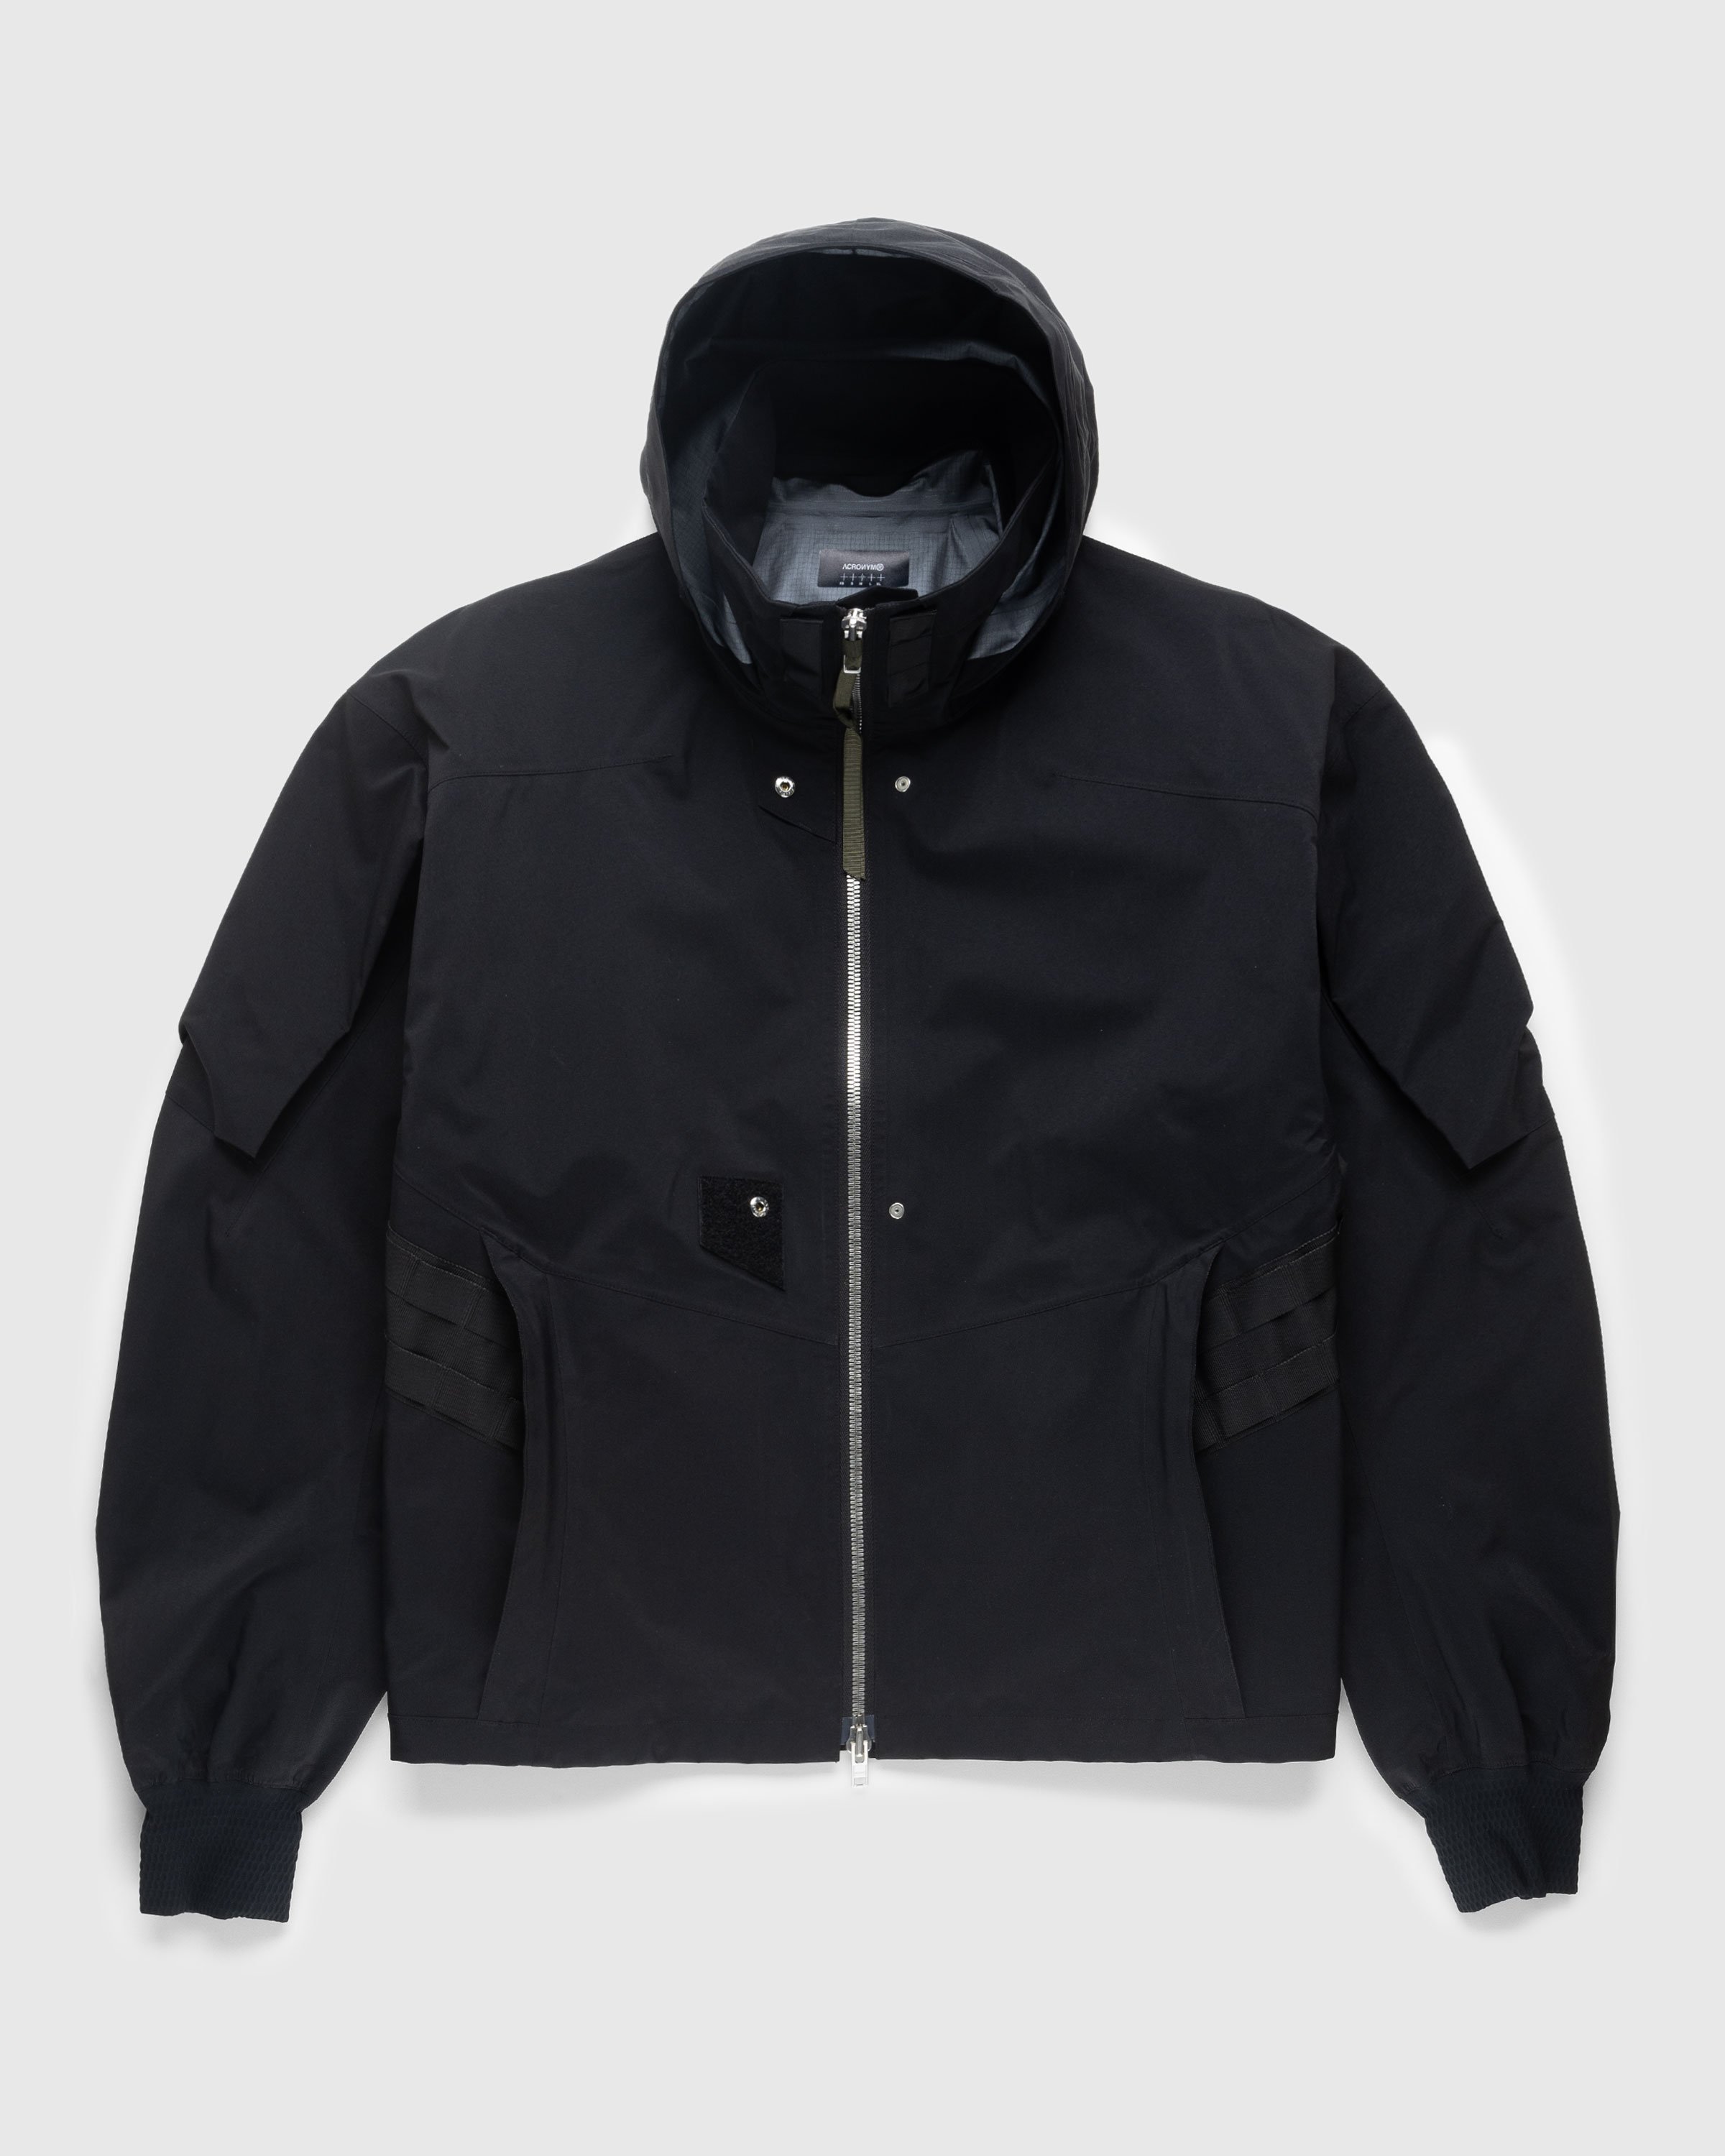 ACRONYM - J110TS-GT Jacket Black - Clothing - Black - Image 1